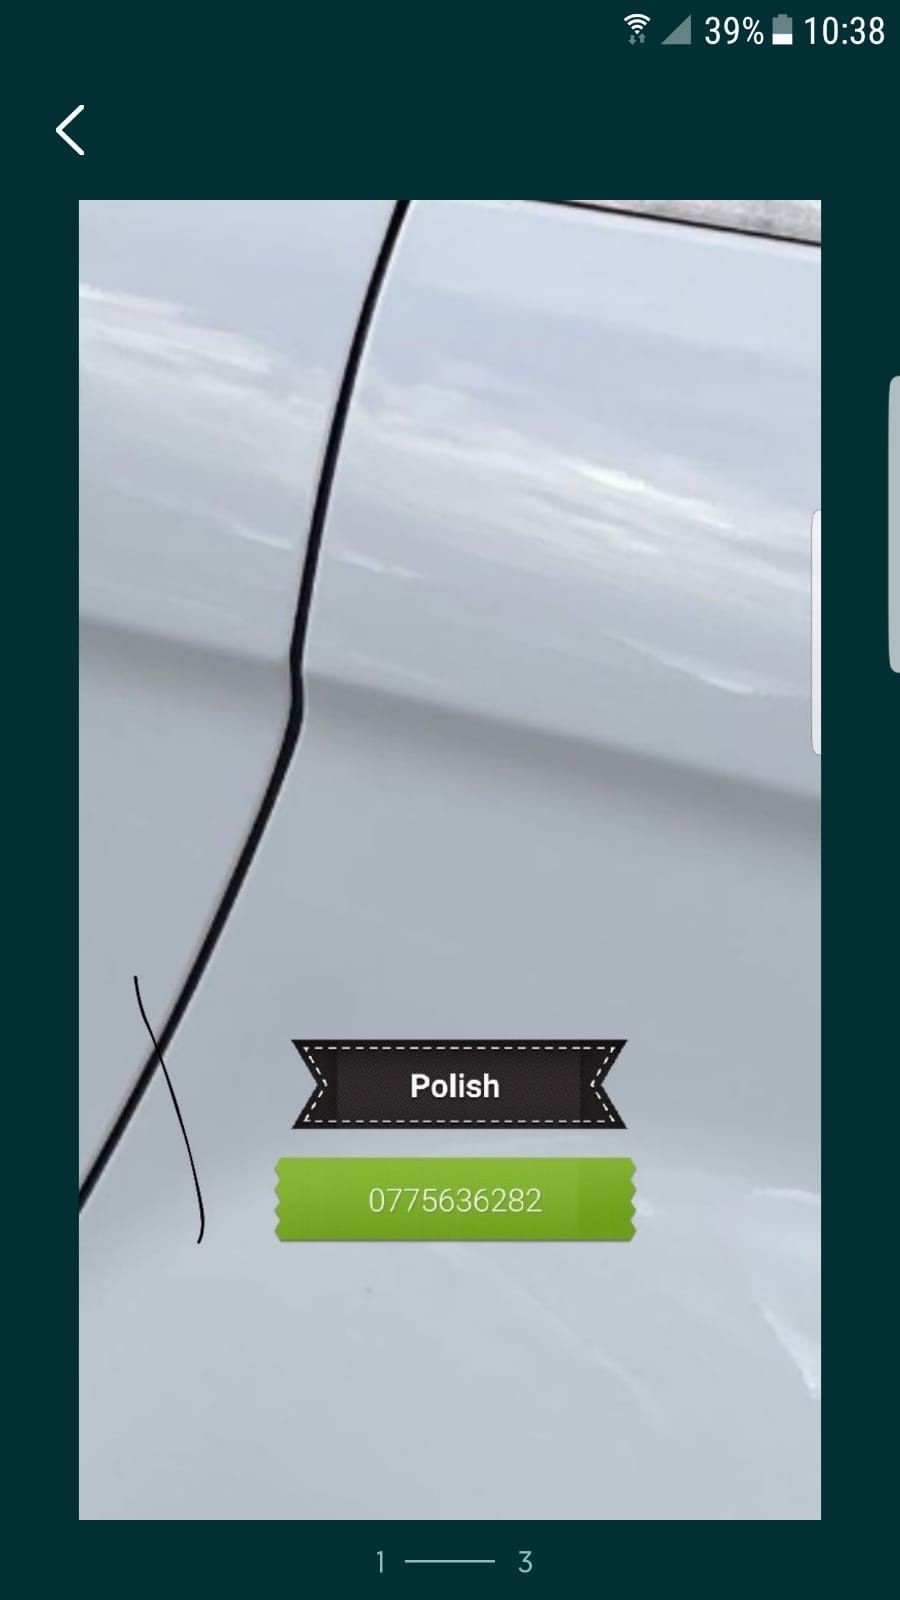 Polish faruri profesional